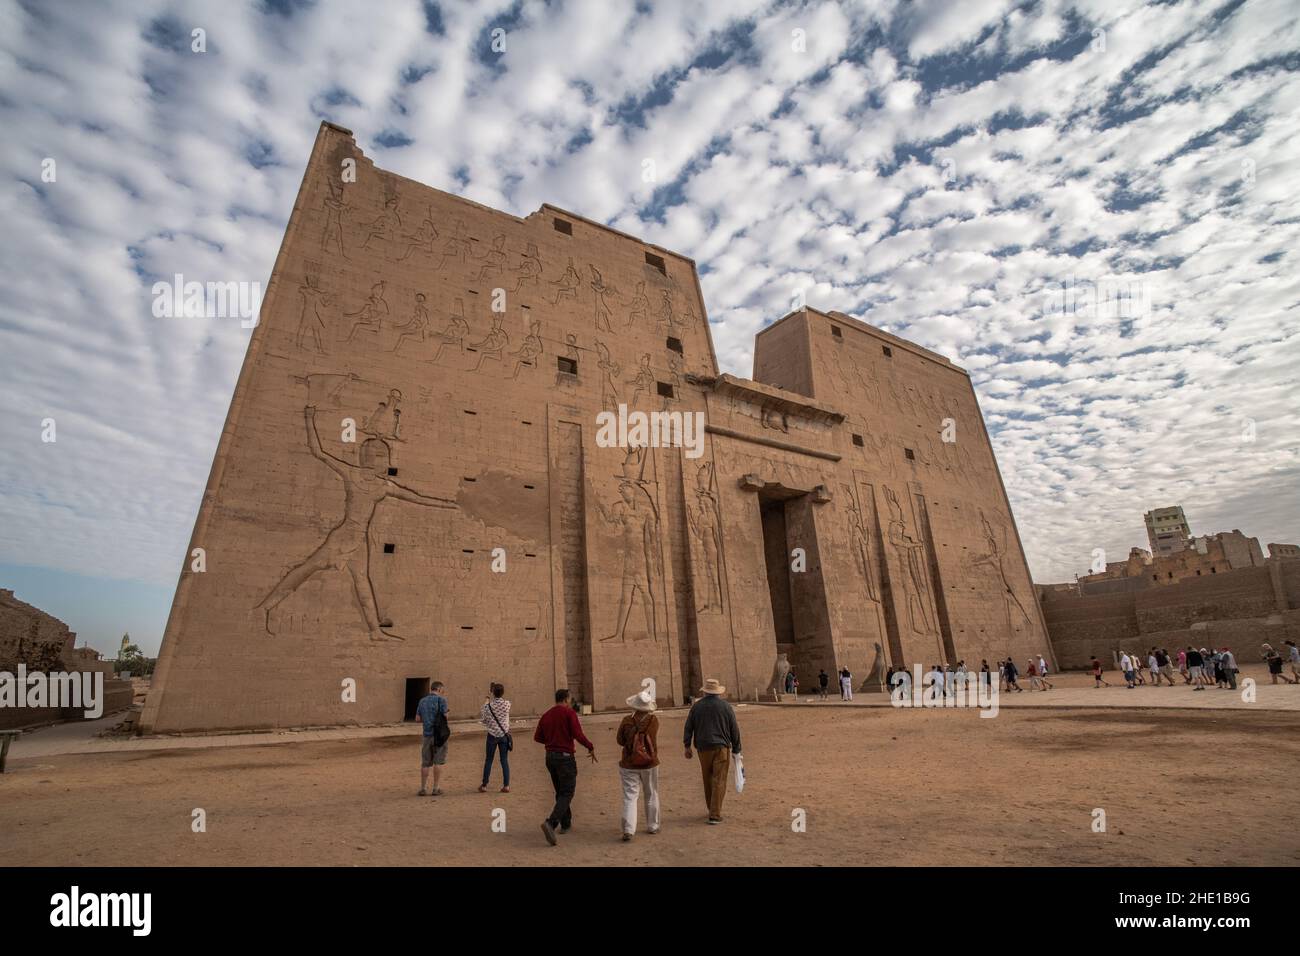 Das Äußere des Edfu-Tempels, einer berühmten archäologischen Stätte in Ägypten. Stockfoto